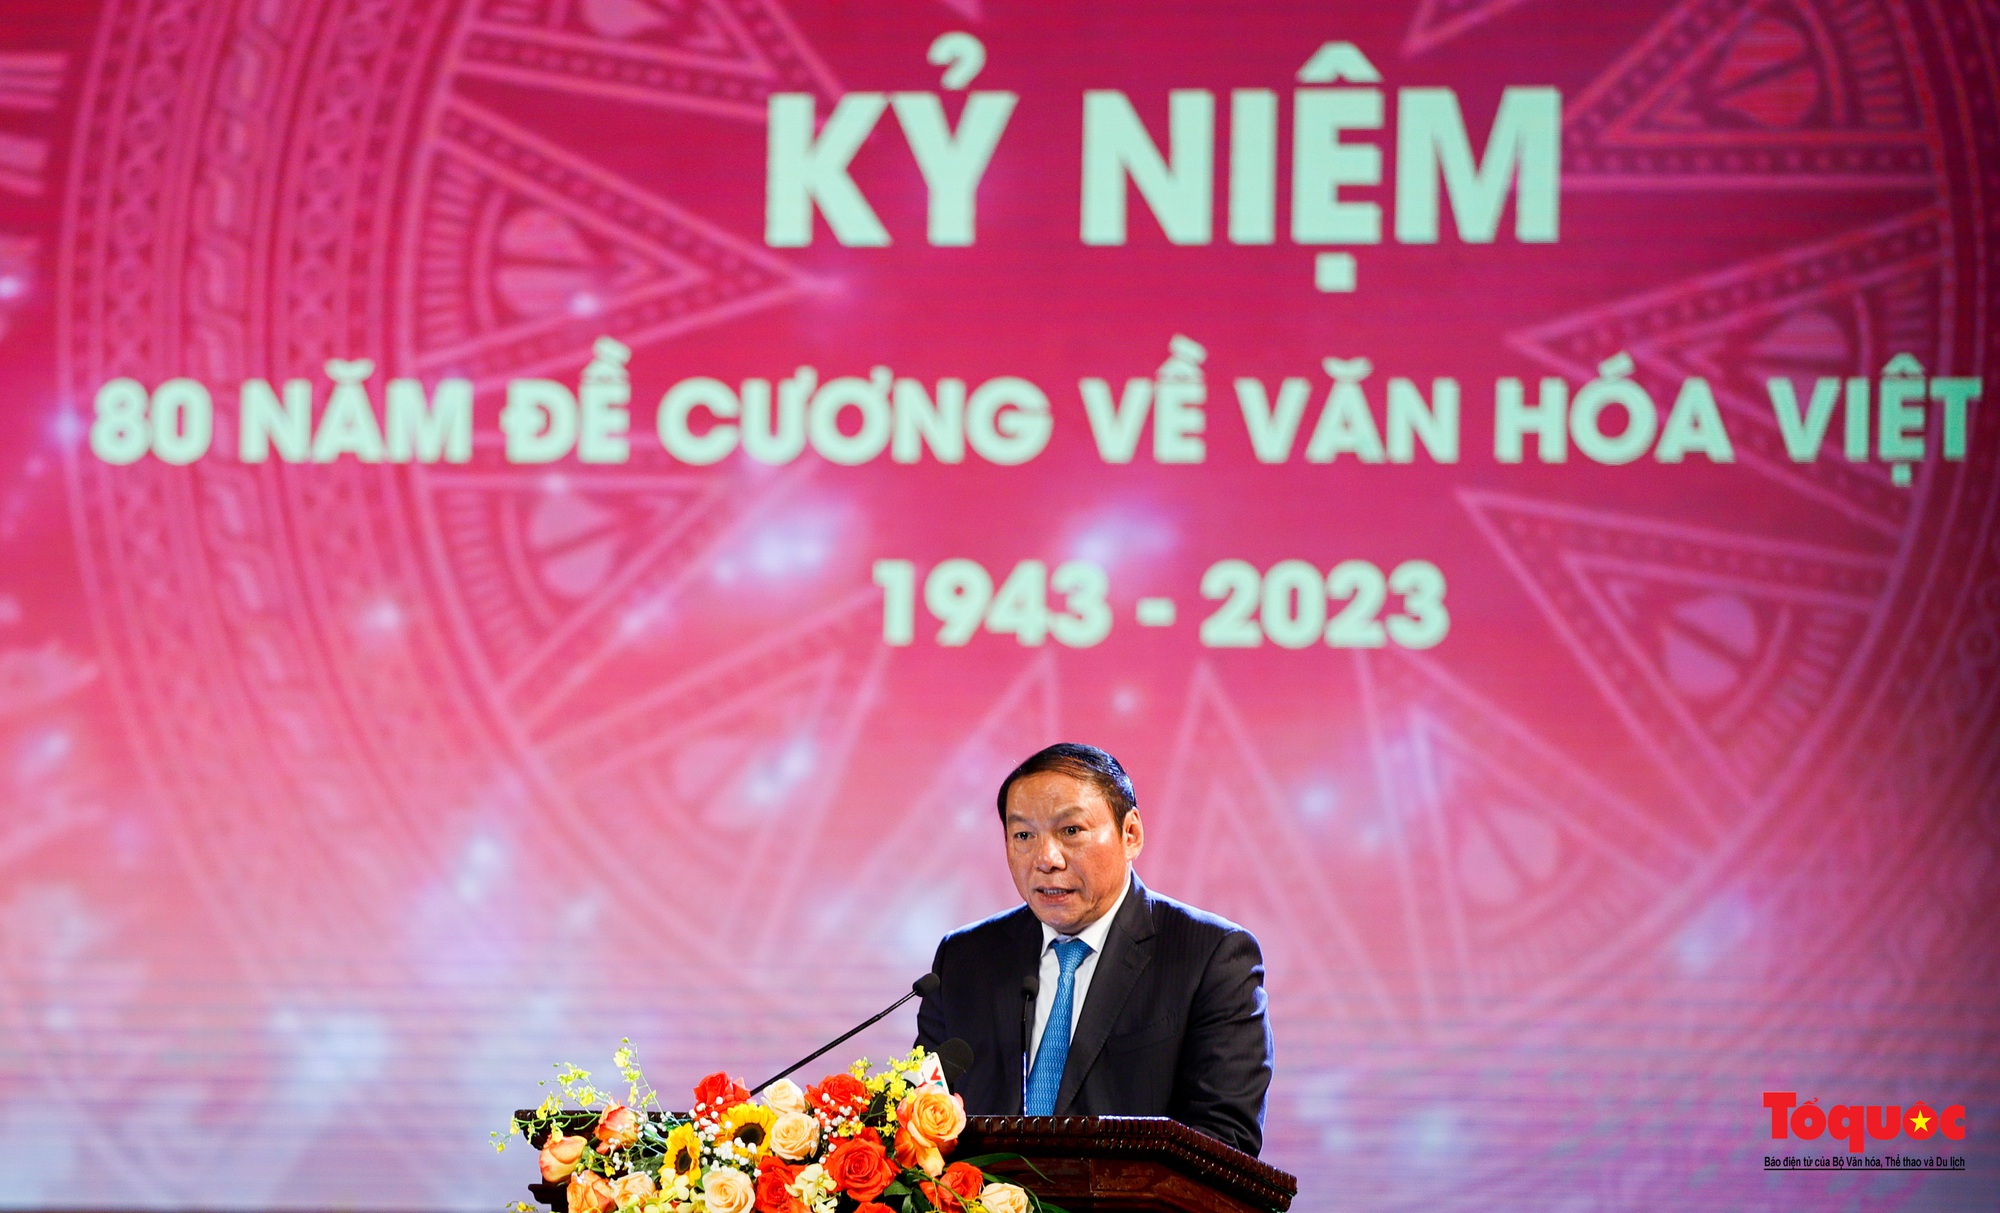 Chùm ảnh: Lễ kỷ niệm và chương trình nghệ thuật đặc biệt kỷ niệm 80 năm ra đời Đề cương văn hóa Việt Nam - Ảnh 5.